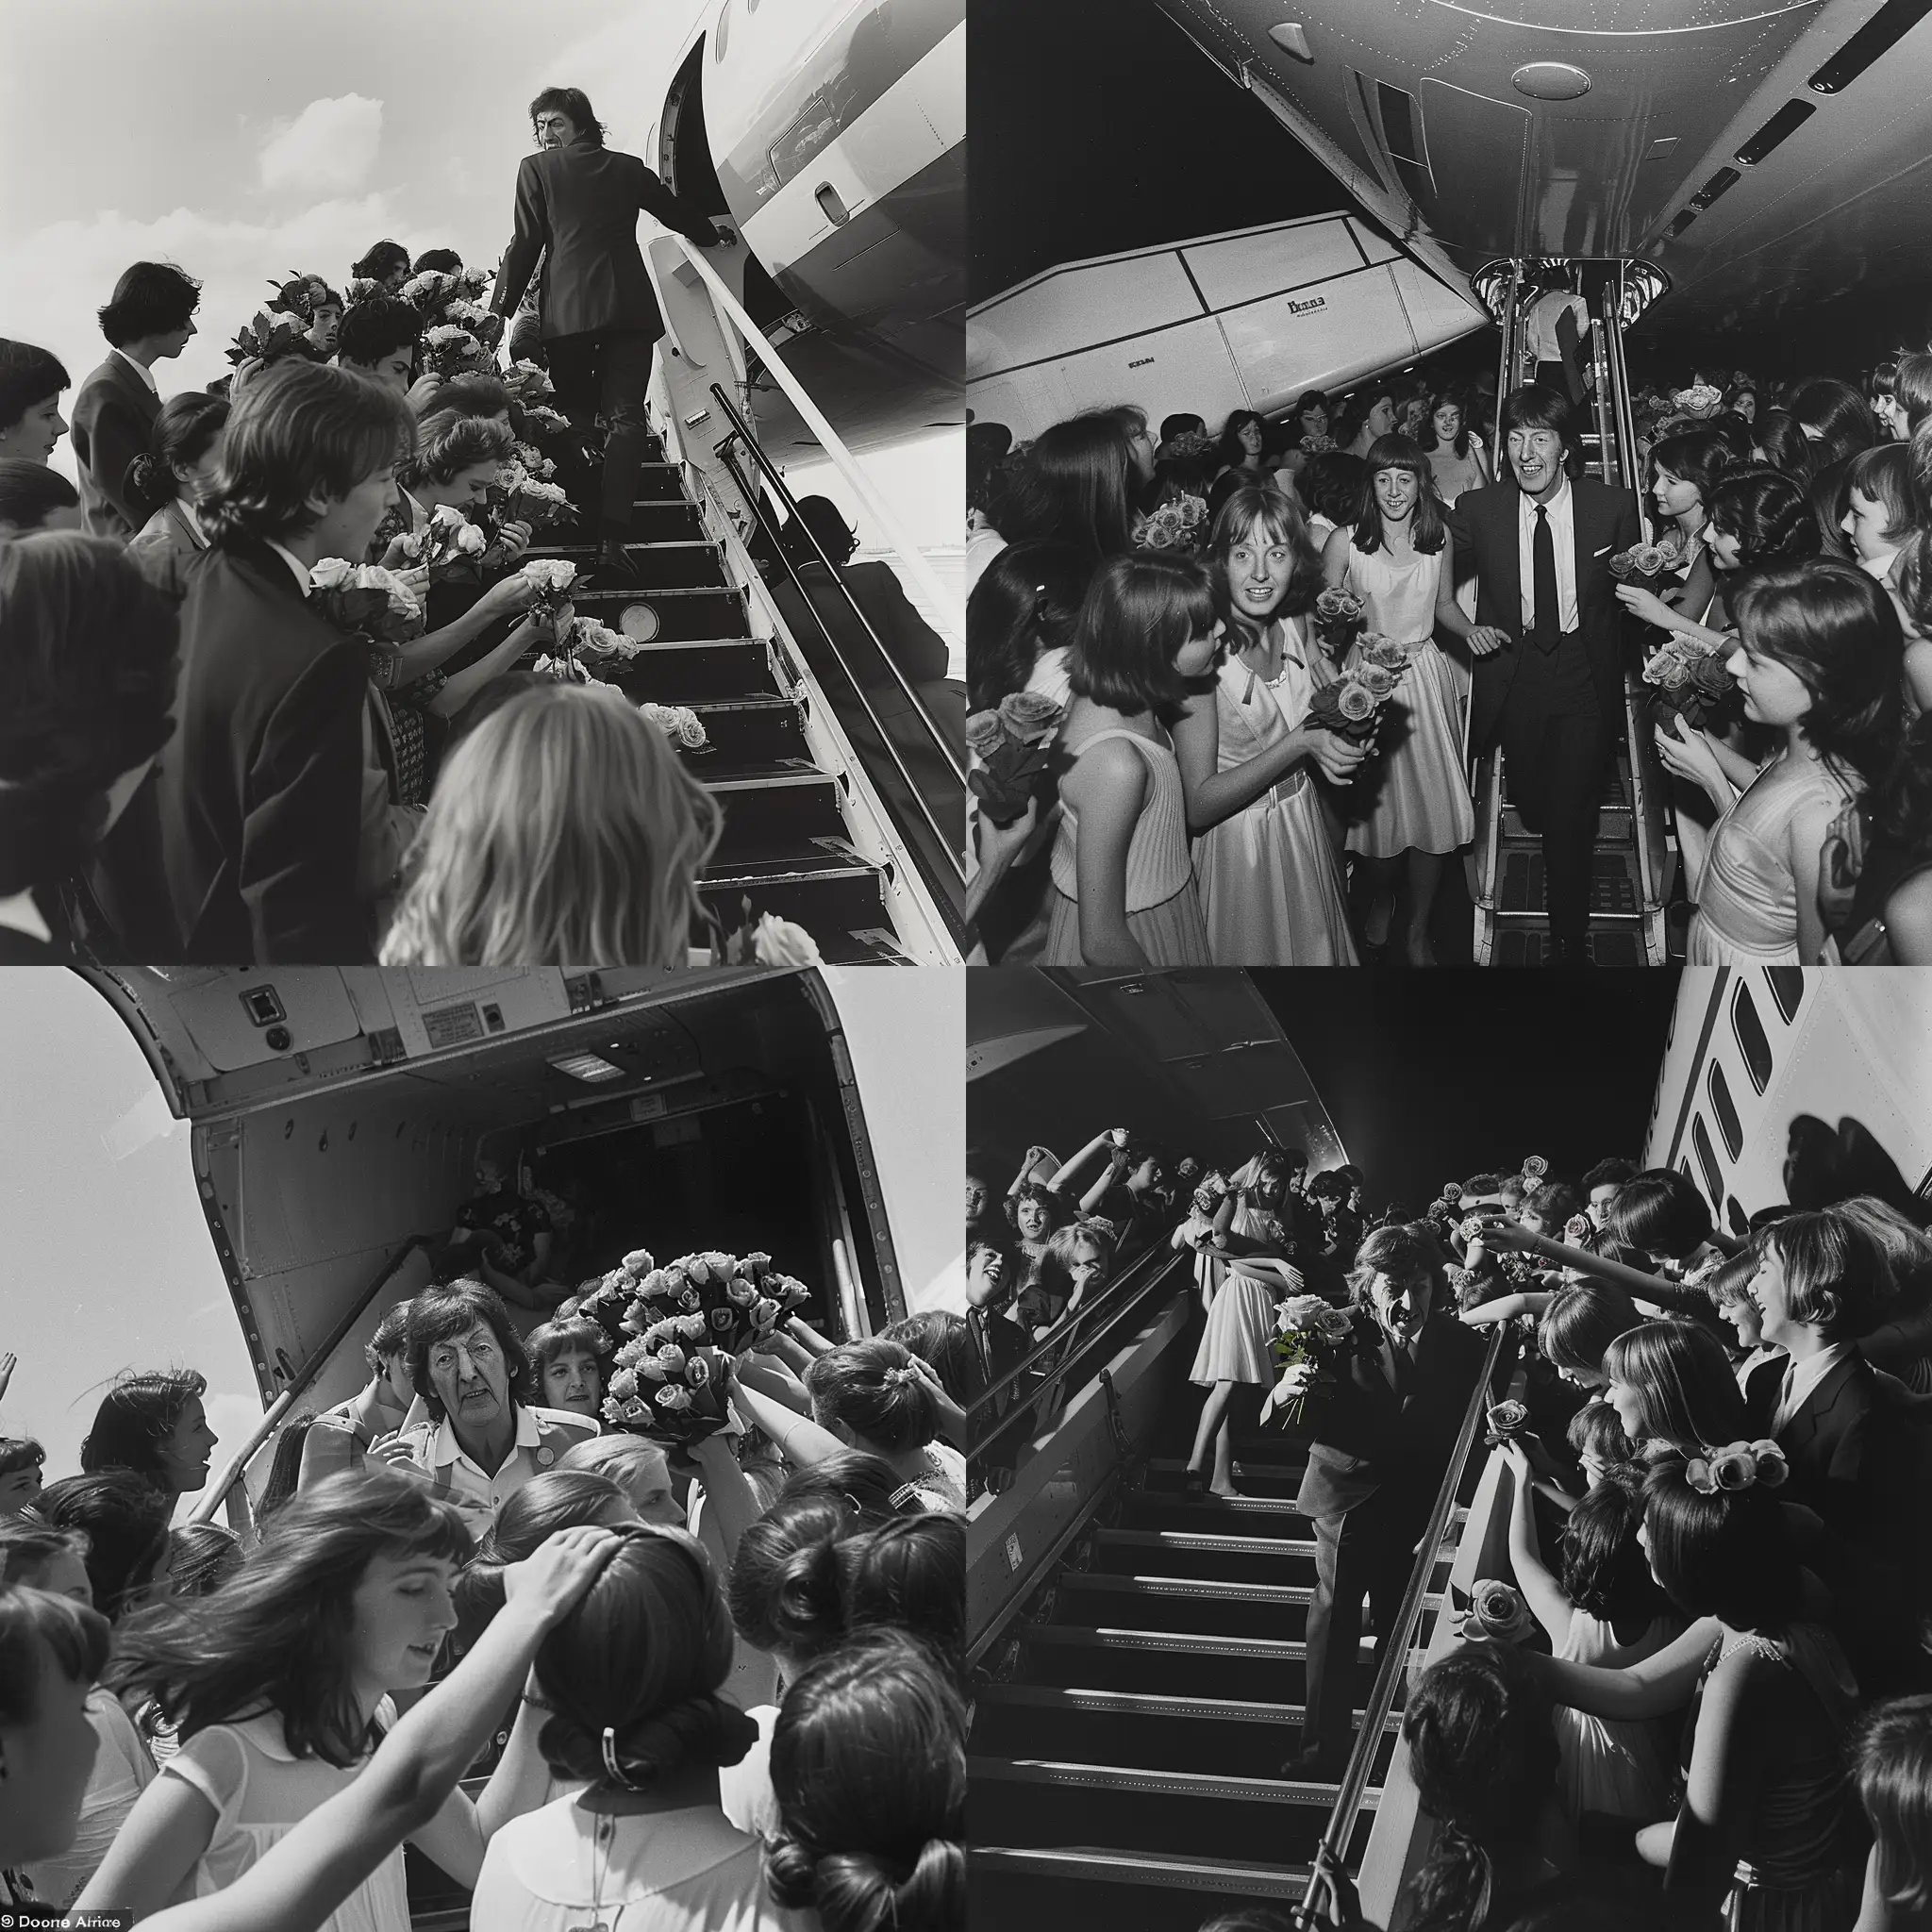 Пол Маккартни спускается с трапа самолета British Airlines его встречает толпа девушек с розами.